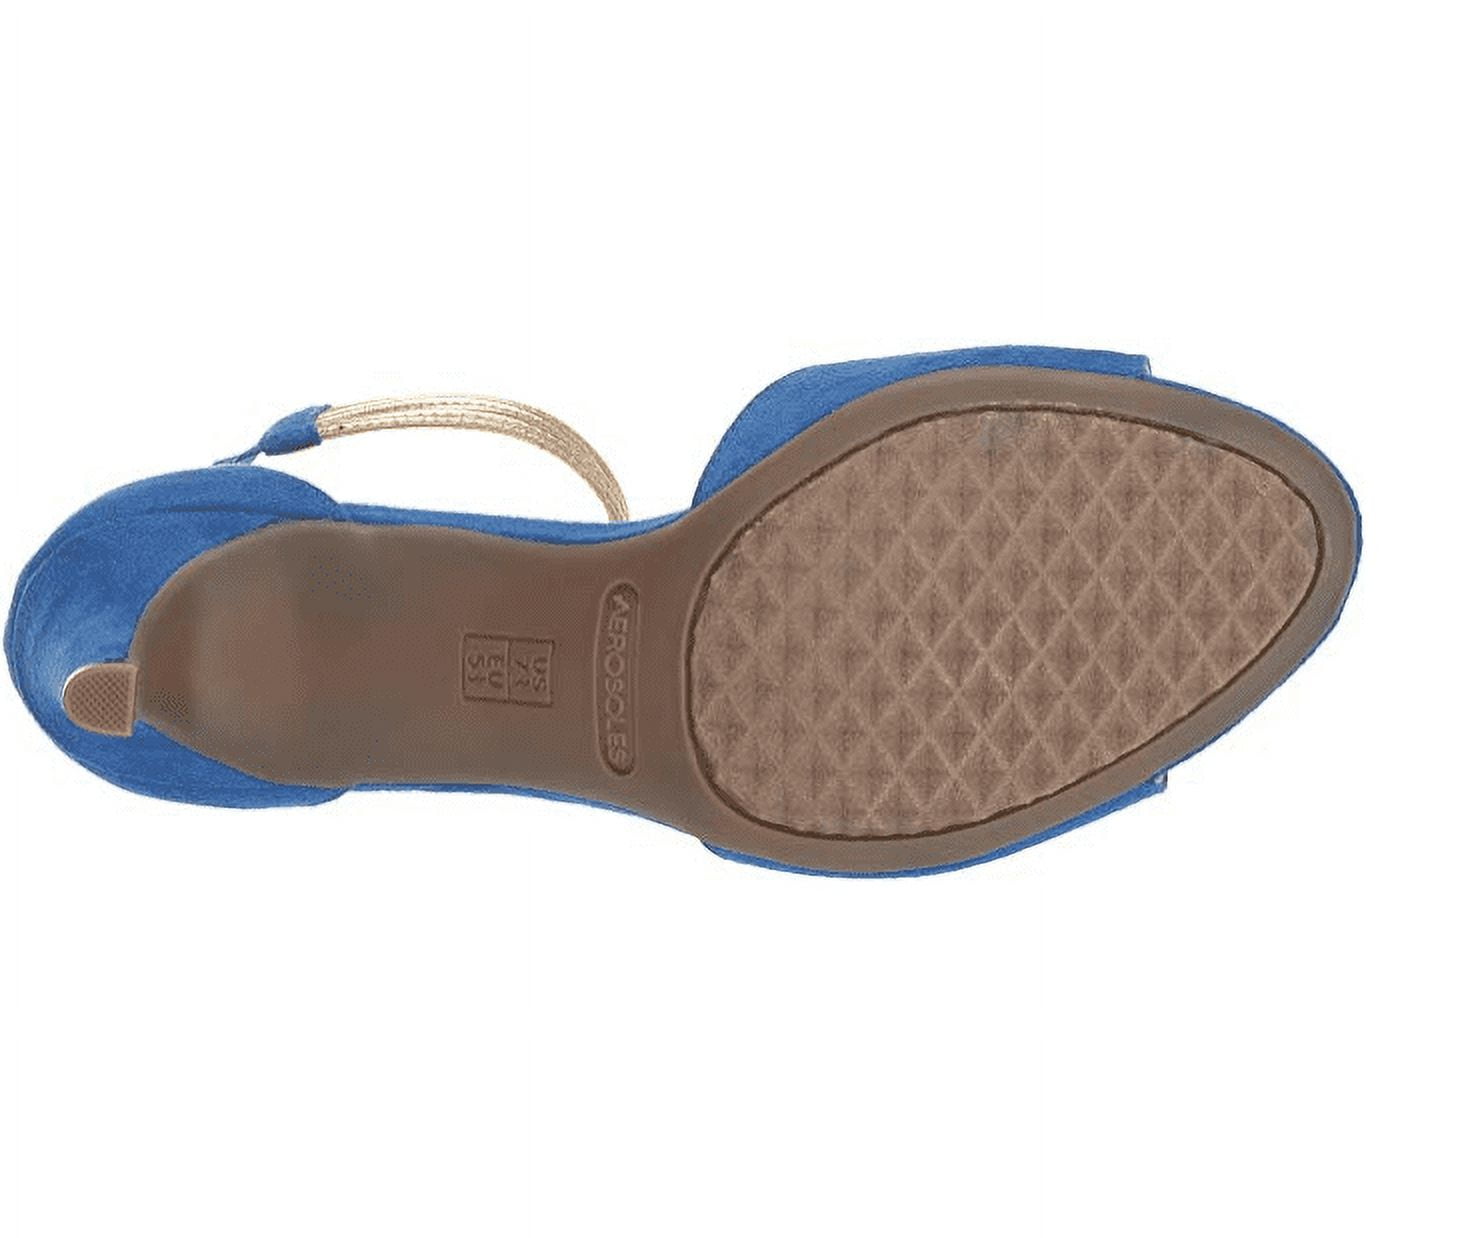 VINTAGE AEROSOLES Dark Brown Leather Sandal with... - Depop